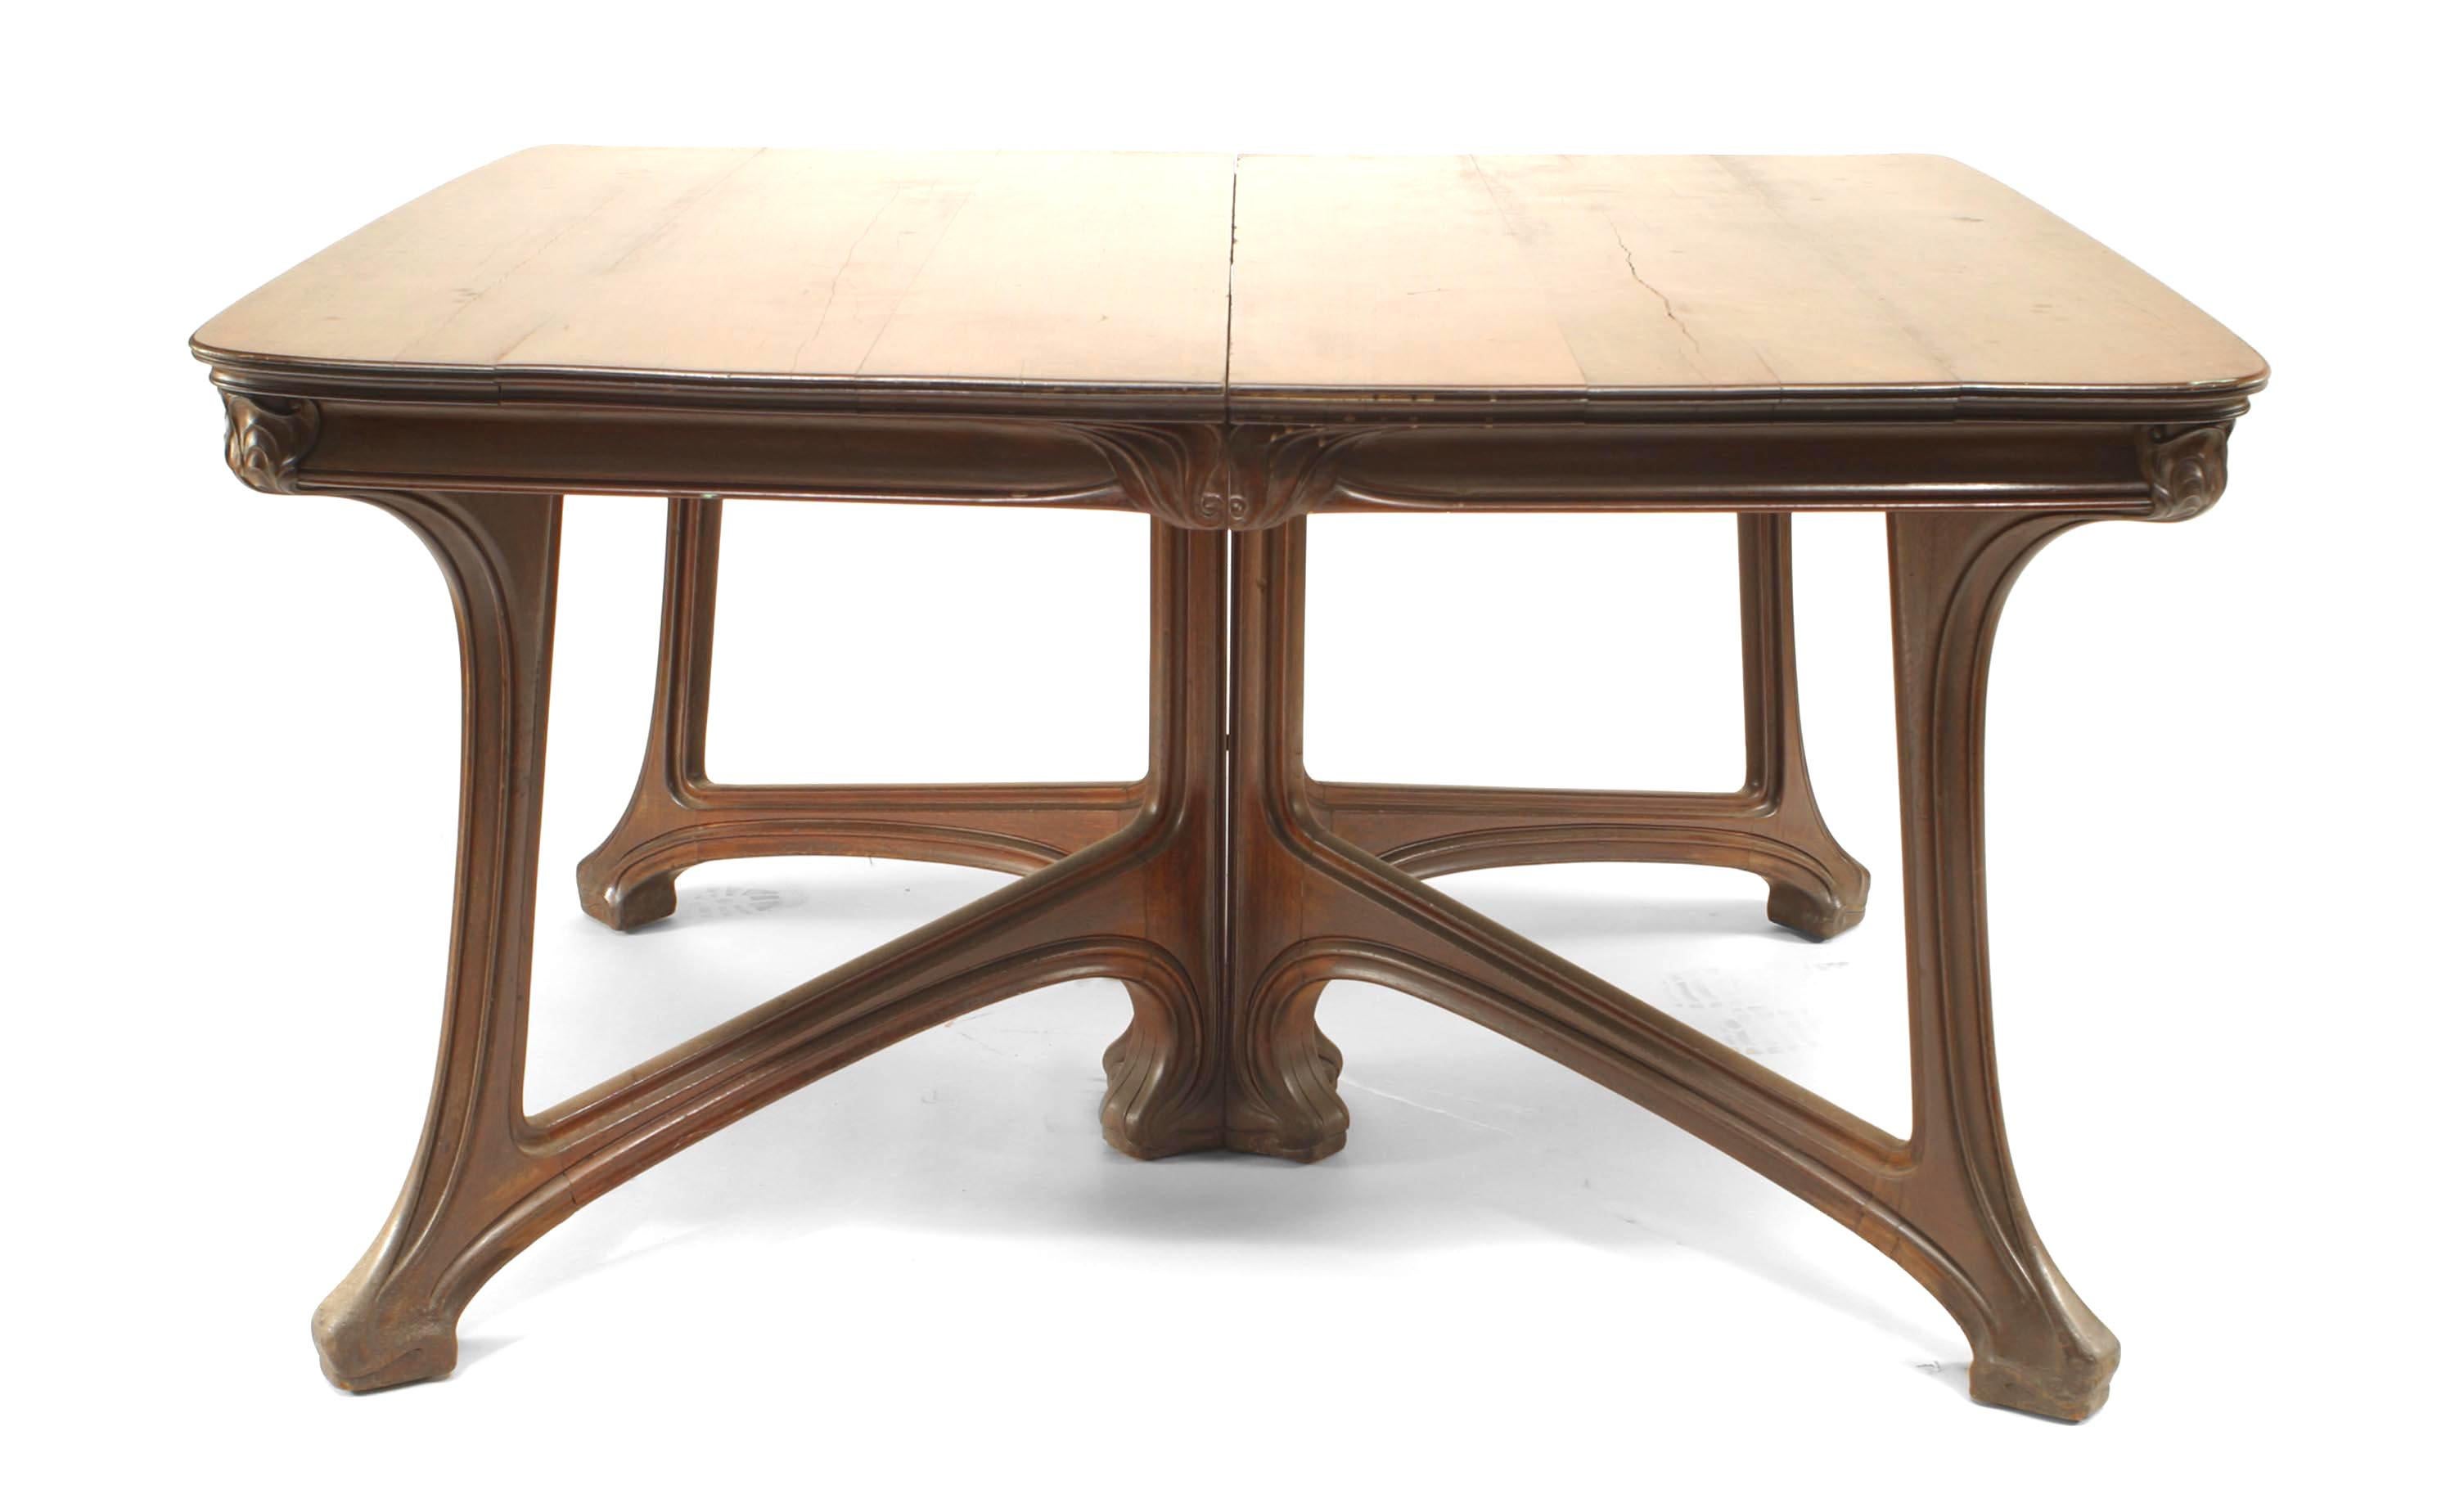 Table de salle à manger Art Nouveau en noyer, à 2 sections et à brancard. (GAILLARD - page 386, Collectors Encyclopedia of Antiques) (Related Item : 051039)
